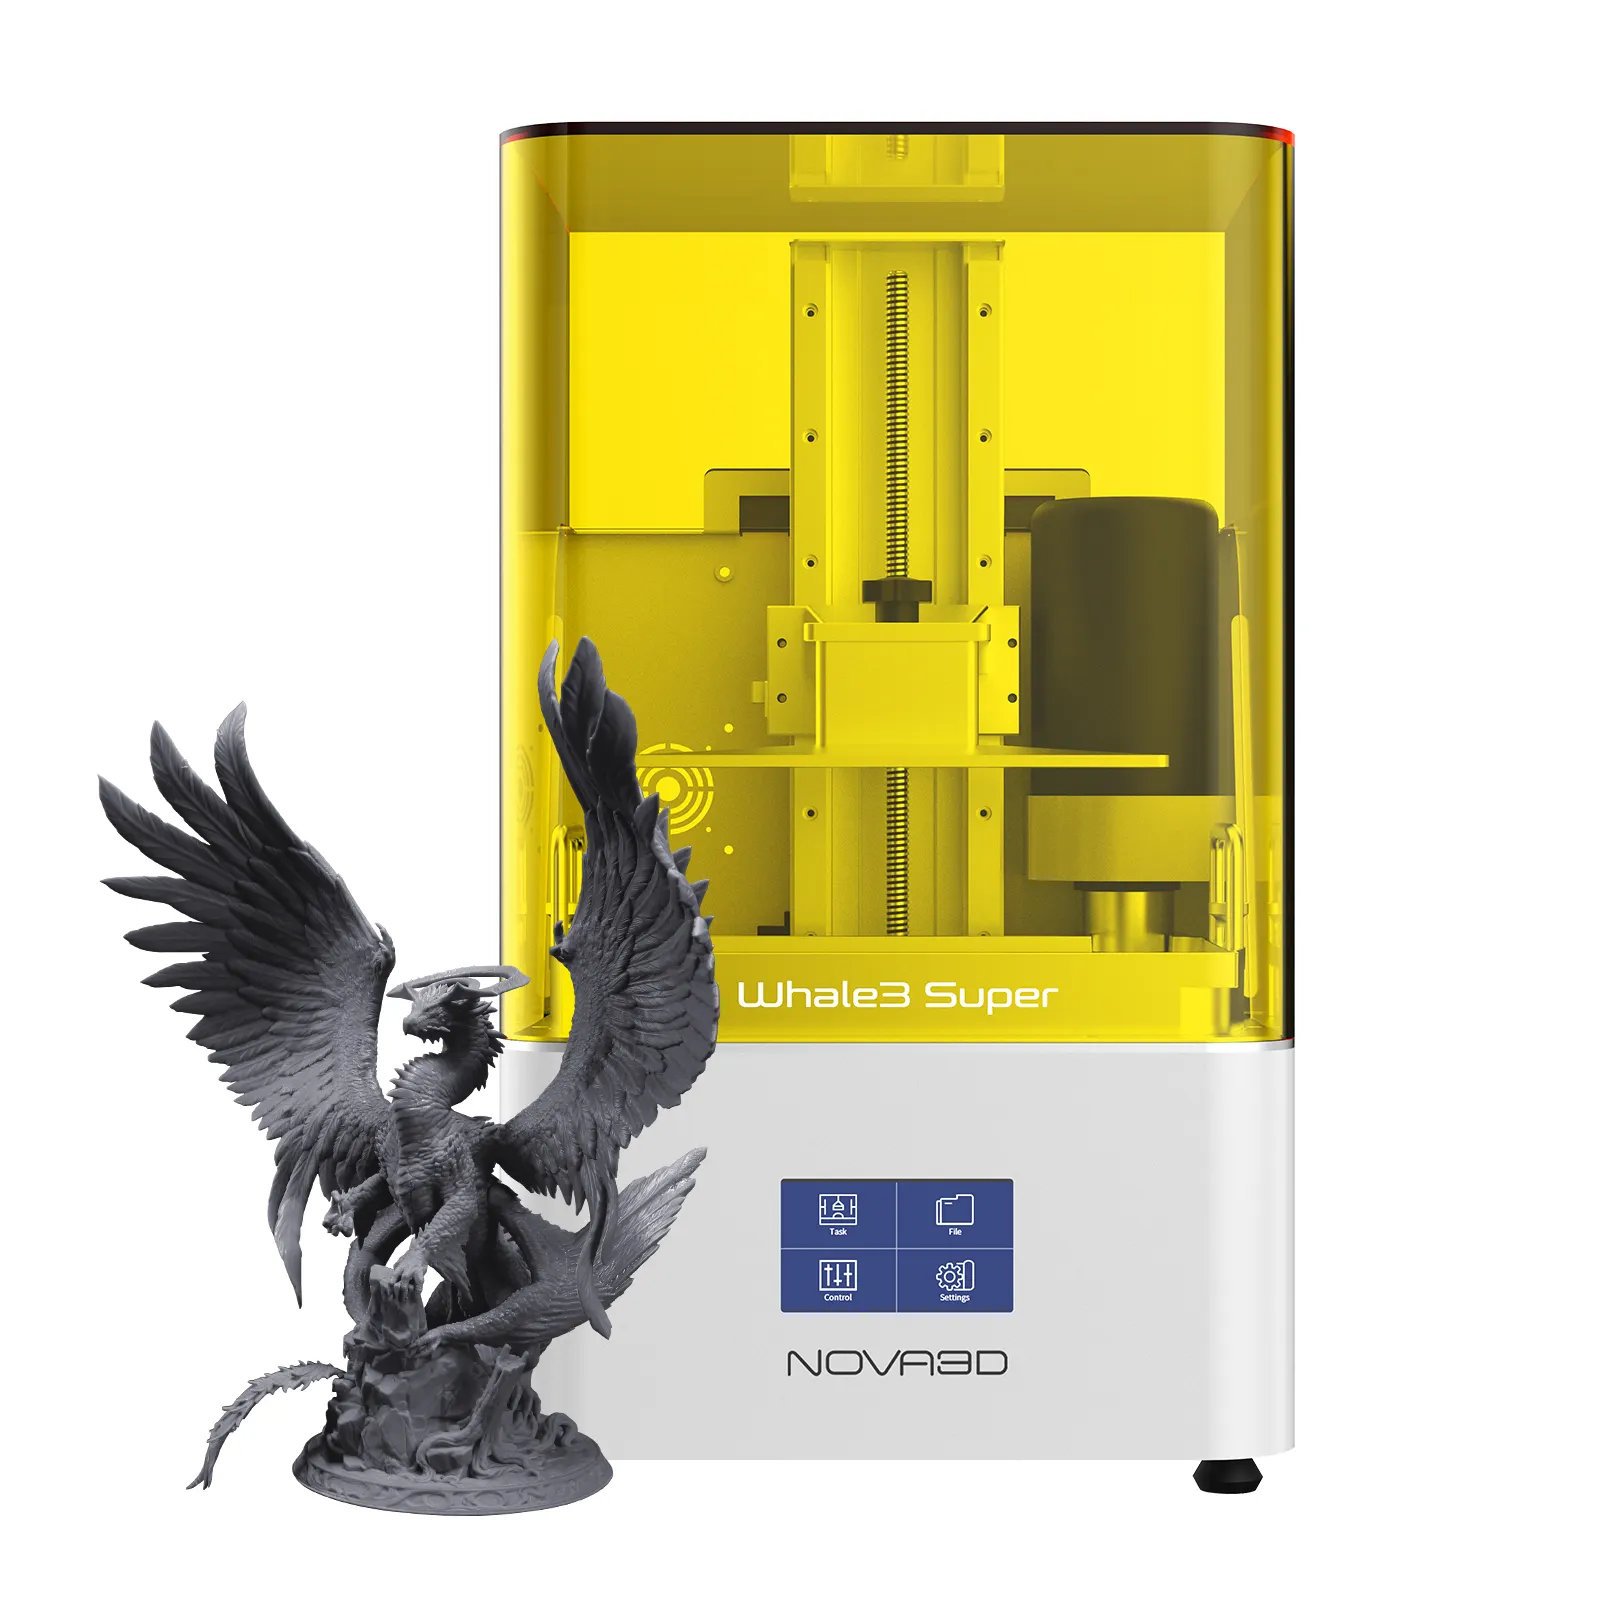 NOVA3Dwhale3 Super14k Résine à alimentation automatique de haute précision pour bâtiment de grande taille Imprimante 3D industrielle Matériau résine Imprimante 3D